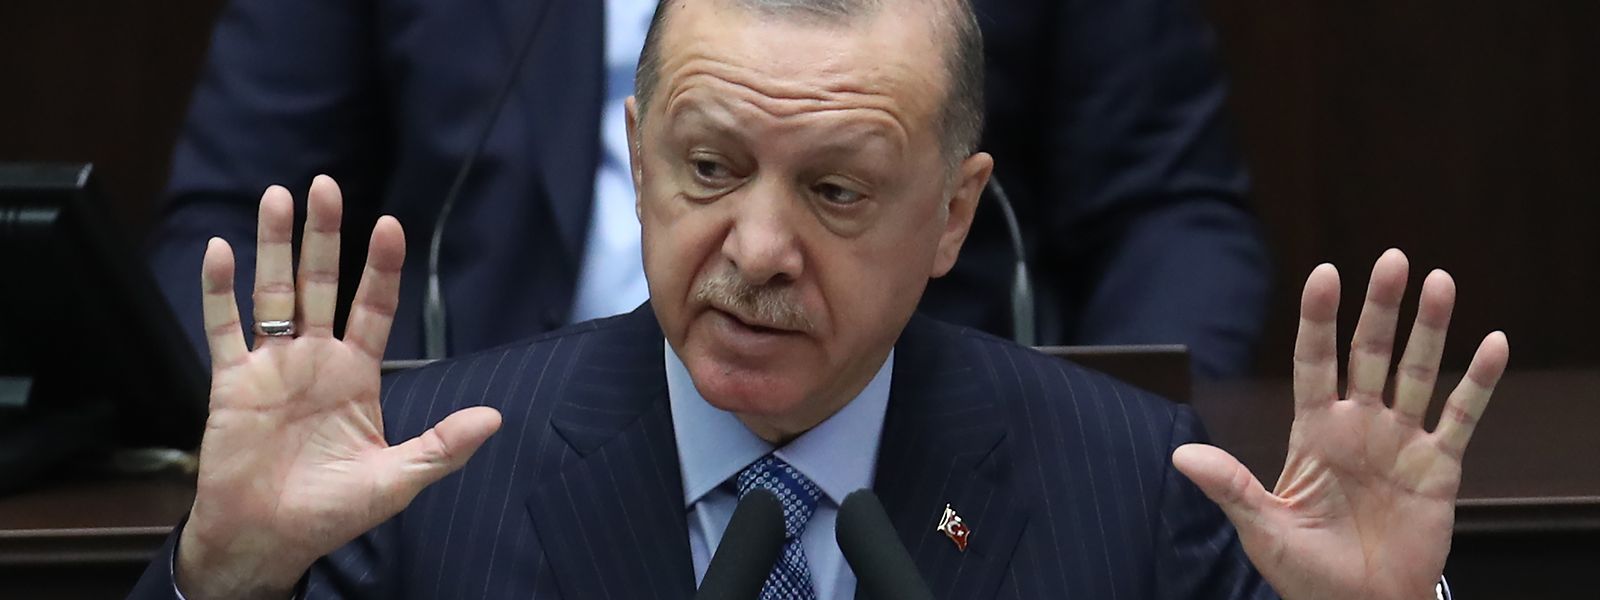 Der türkische Präsident Recep Tayyip Erdogan will sich dem Westen annähern - aber nur, weil er ihn braucht.